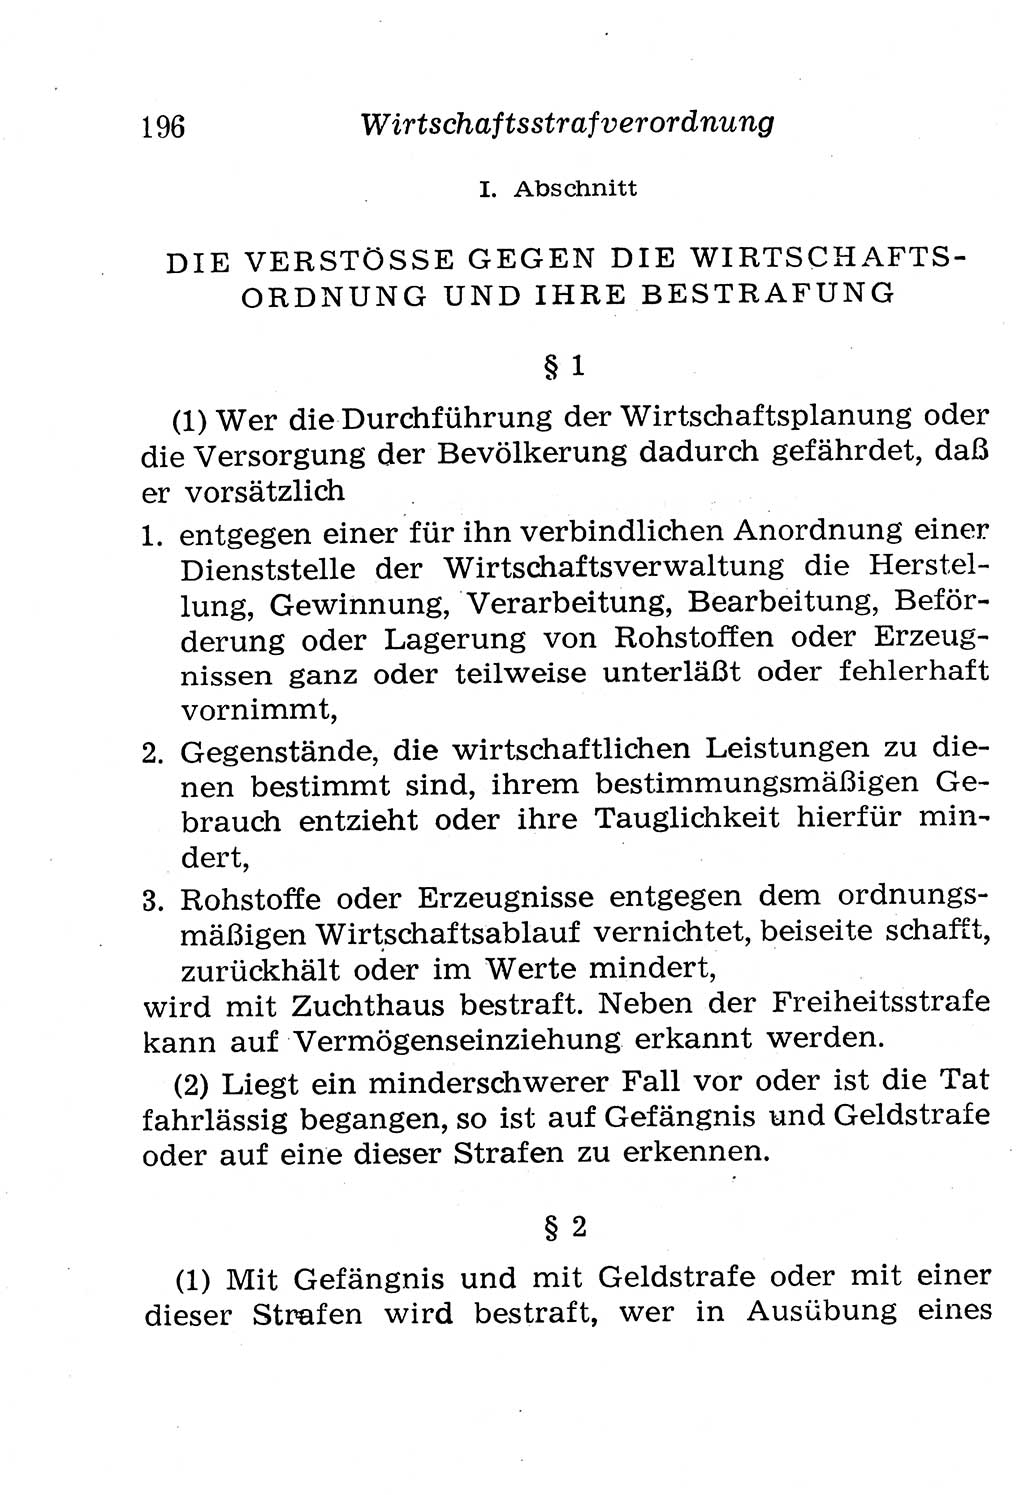 Strafgesetzbuch (StGB) und andere Strafgesetze [Deutsche Demokratische Republik (DDR)] 1958, Seite 196 (StGB Strafges. DDR 1958, S. 196)